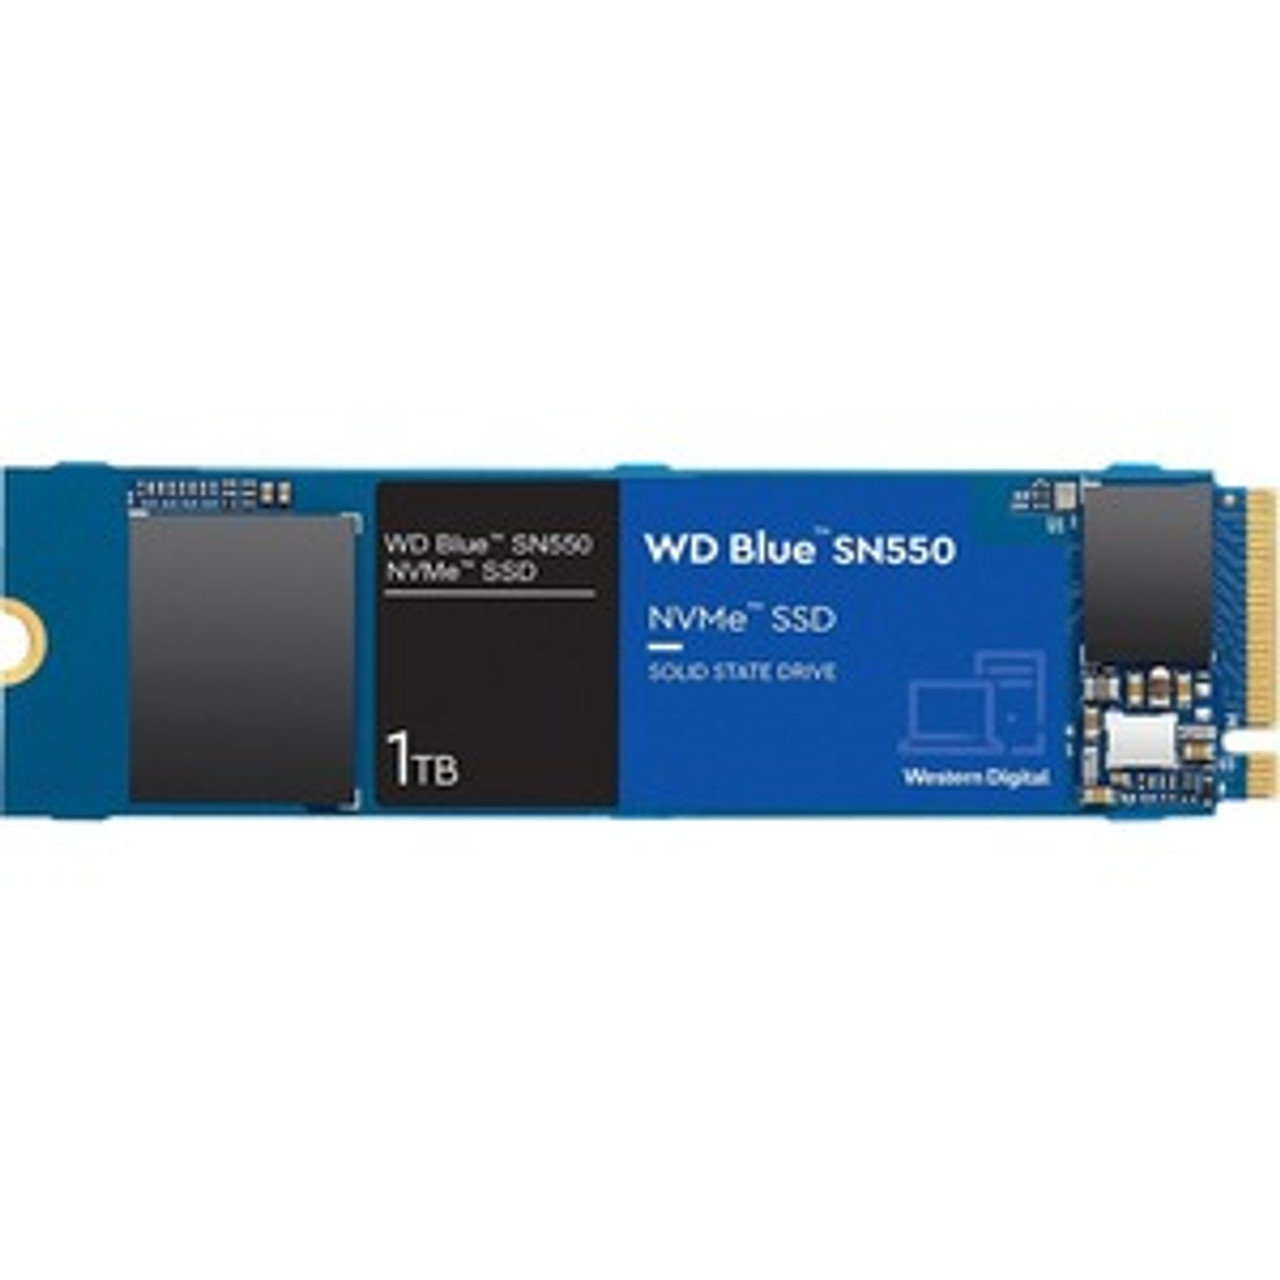 WDS100T2B0C Western Digital Blue SN550 1TB TLC PCI Express 3.0 x4 NVMe M.2 2280 Internal Solid State Drive (SSD)